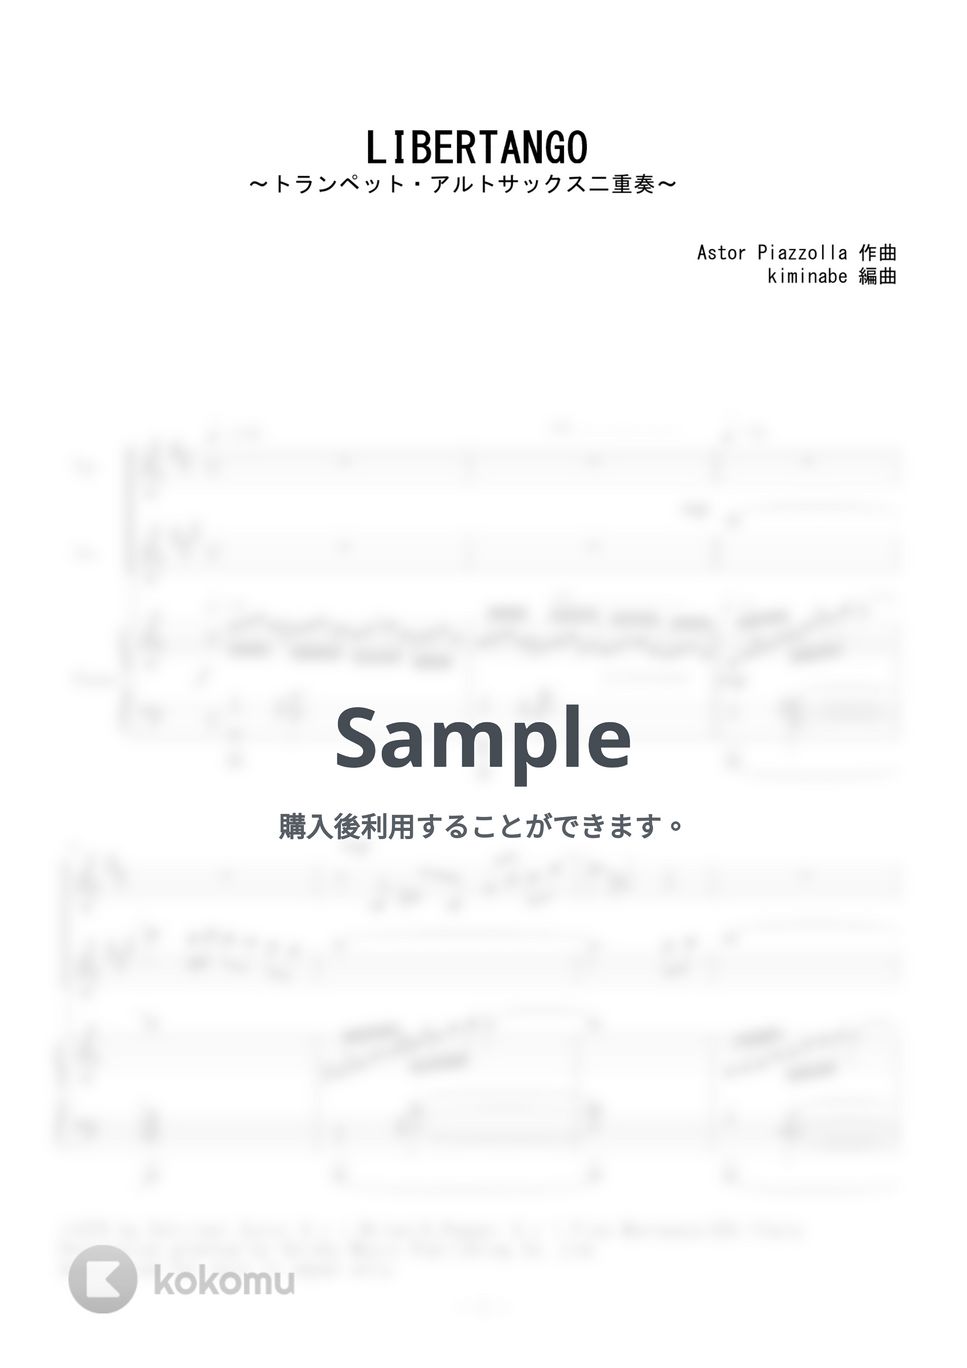 ピアソラ - LIBERTANGO (トラペット・アルトサックス二重奏) by kiminabe